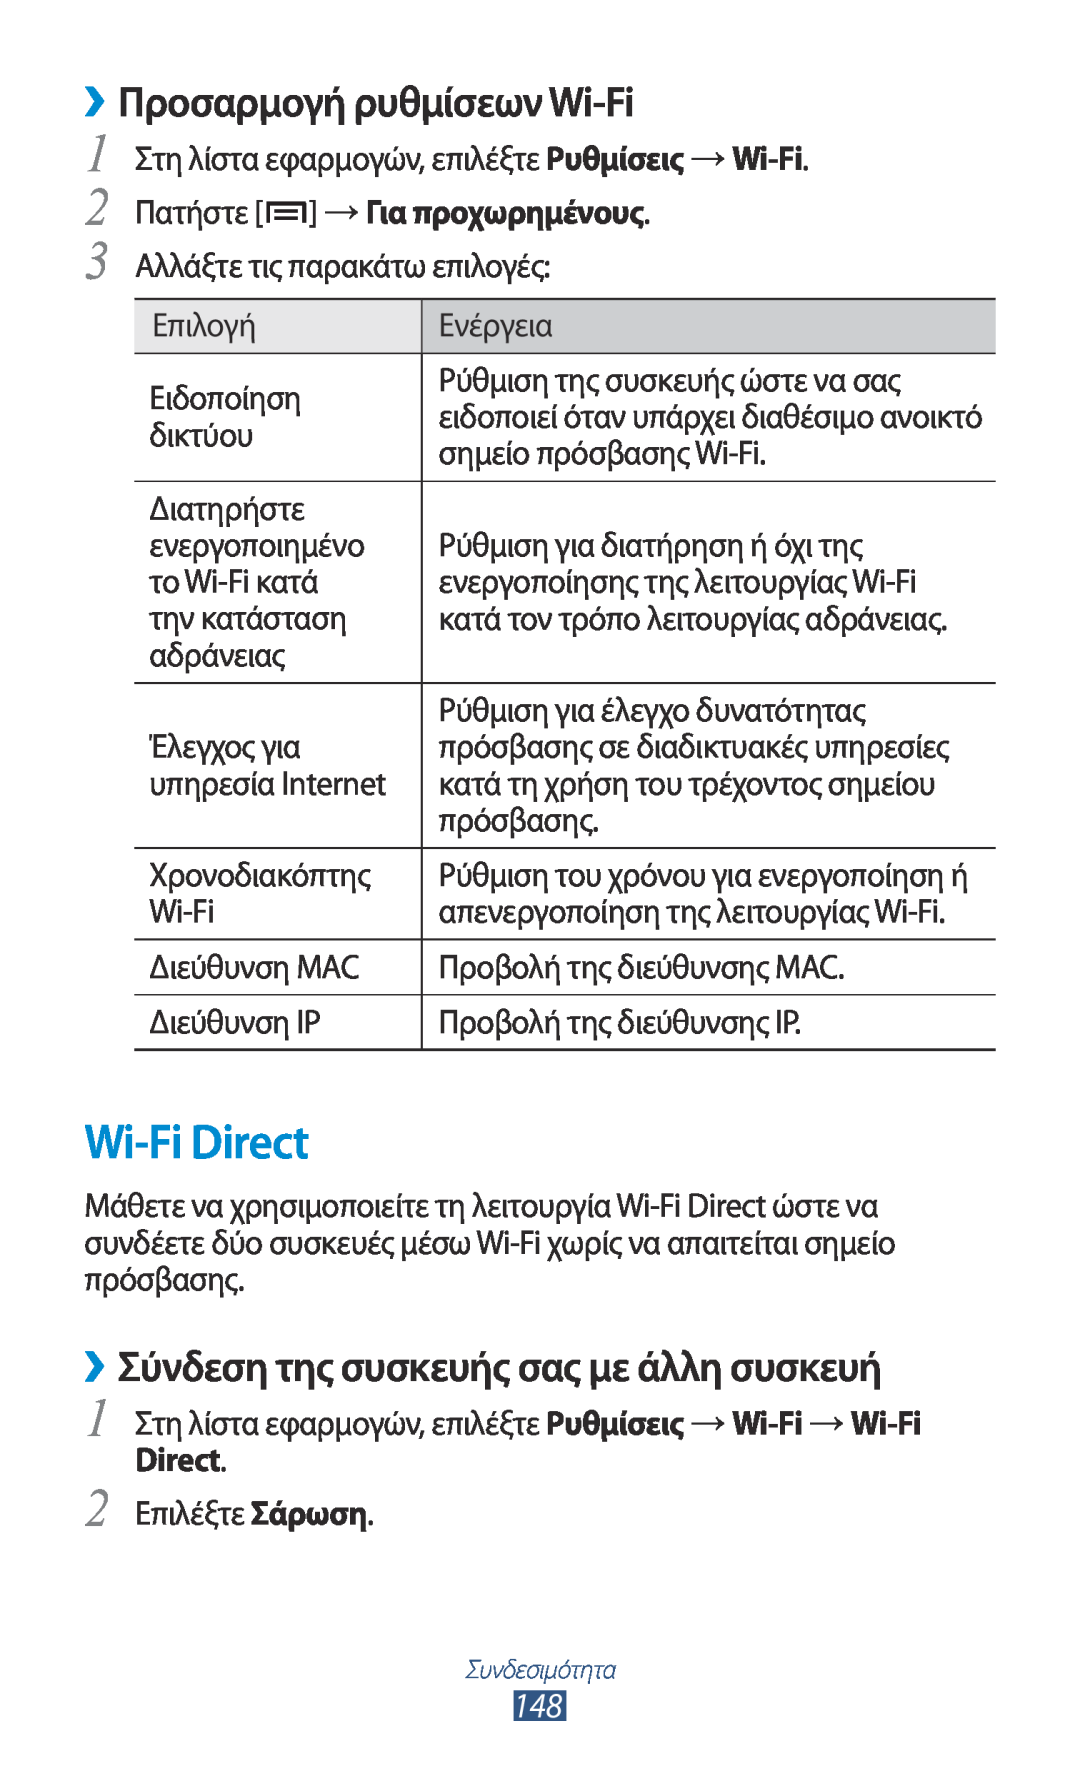 Samsung GT-N7000ZBEVGR manual Wi-Fi Direct, ››Προσαρμογή ρυθμίσεων Wi-Fi, ››Σύνδεση της συσκευής σας με άλλη συσκευή 